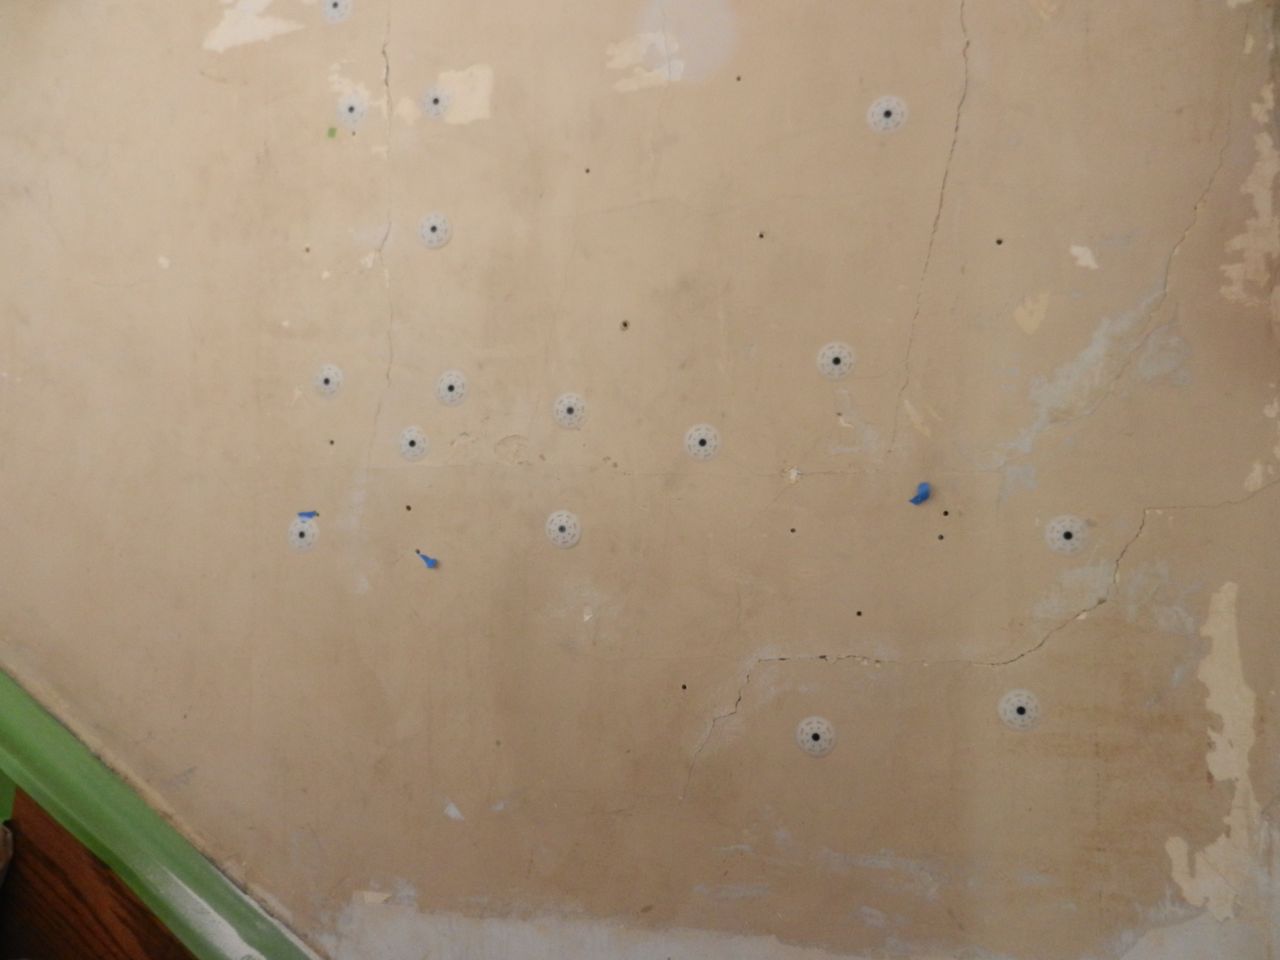 Repairing Cracks On Old Plaster Walls And Ceilings